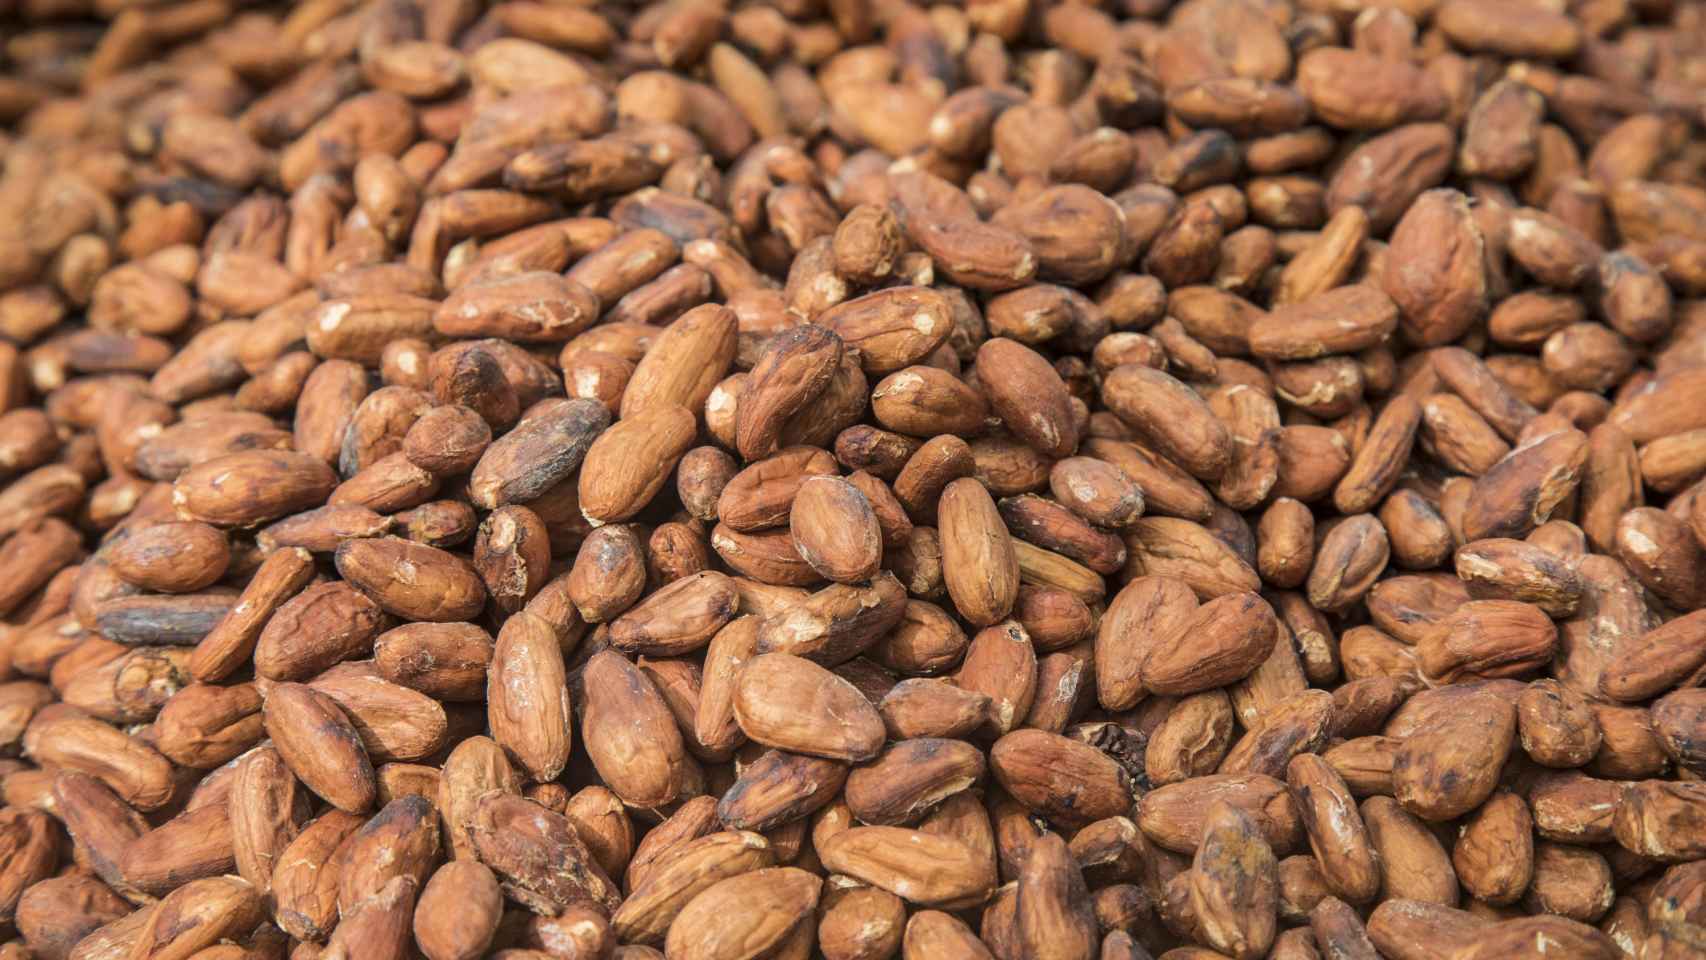 Los olmecas fueron los primeros que domesticaron y utilizaron la semilla de cacao hace más de 3.000 años